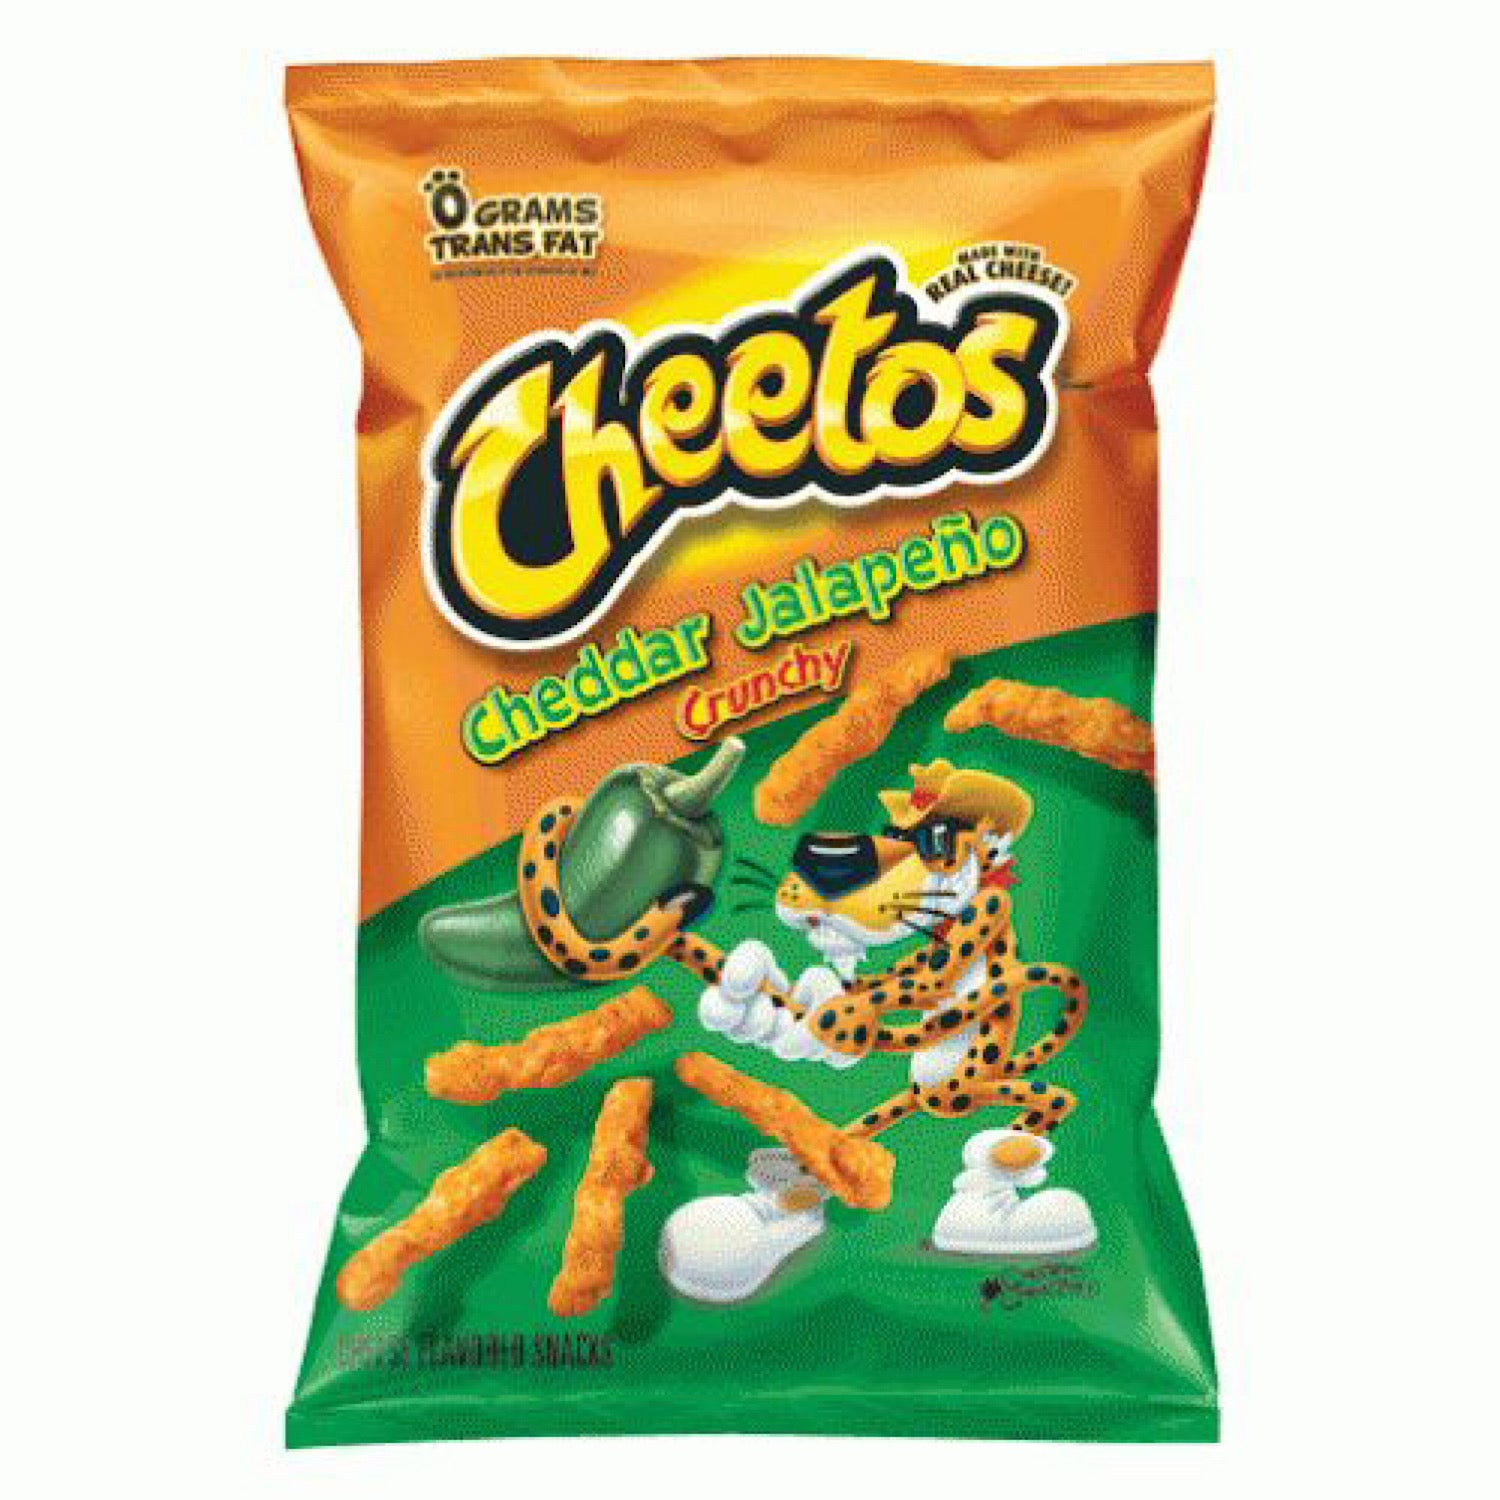 Cheetos cheddar jalapeño